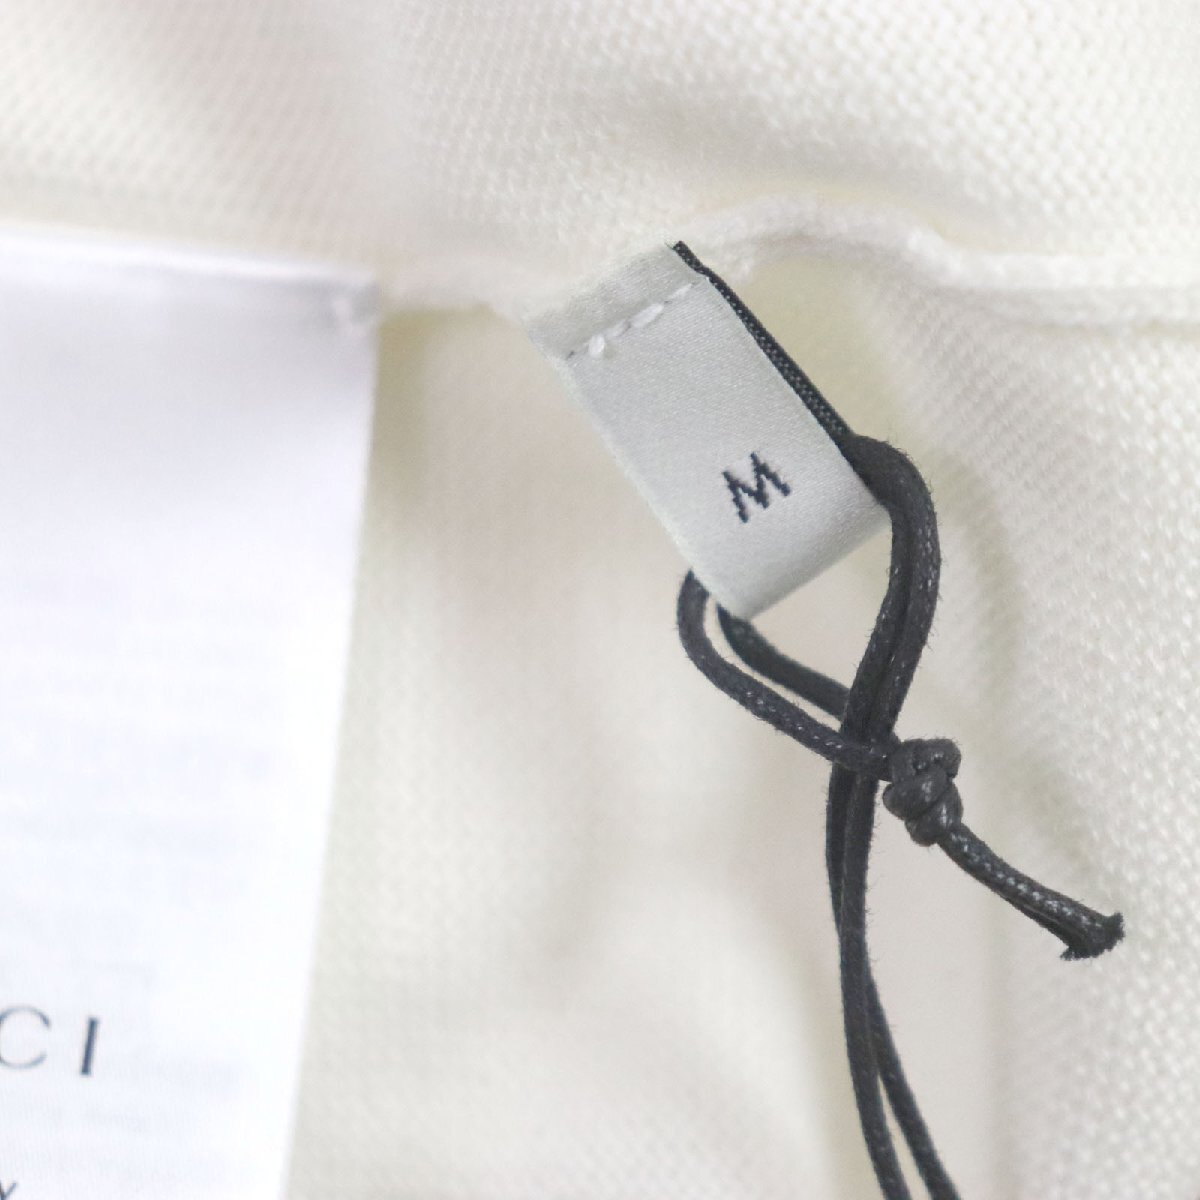  превосходный товар V Gucci 18AW 411610 Inter locking G жемчуг кнопка линия ввод дизайн кардиган белый M сделано в Италии стандартный товар женский 